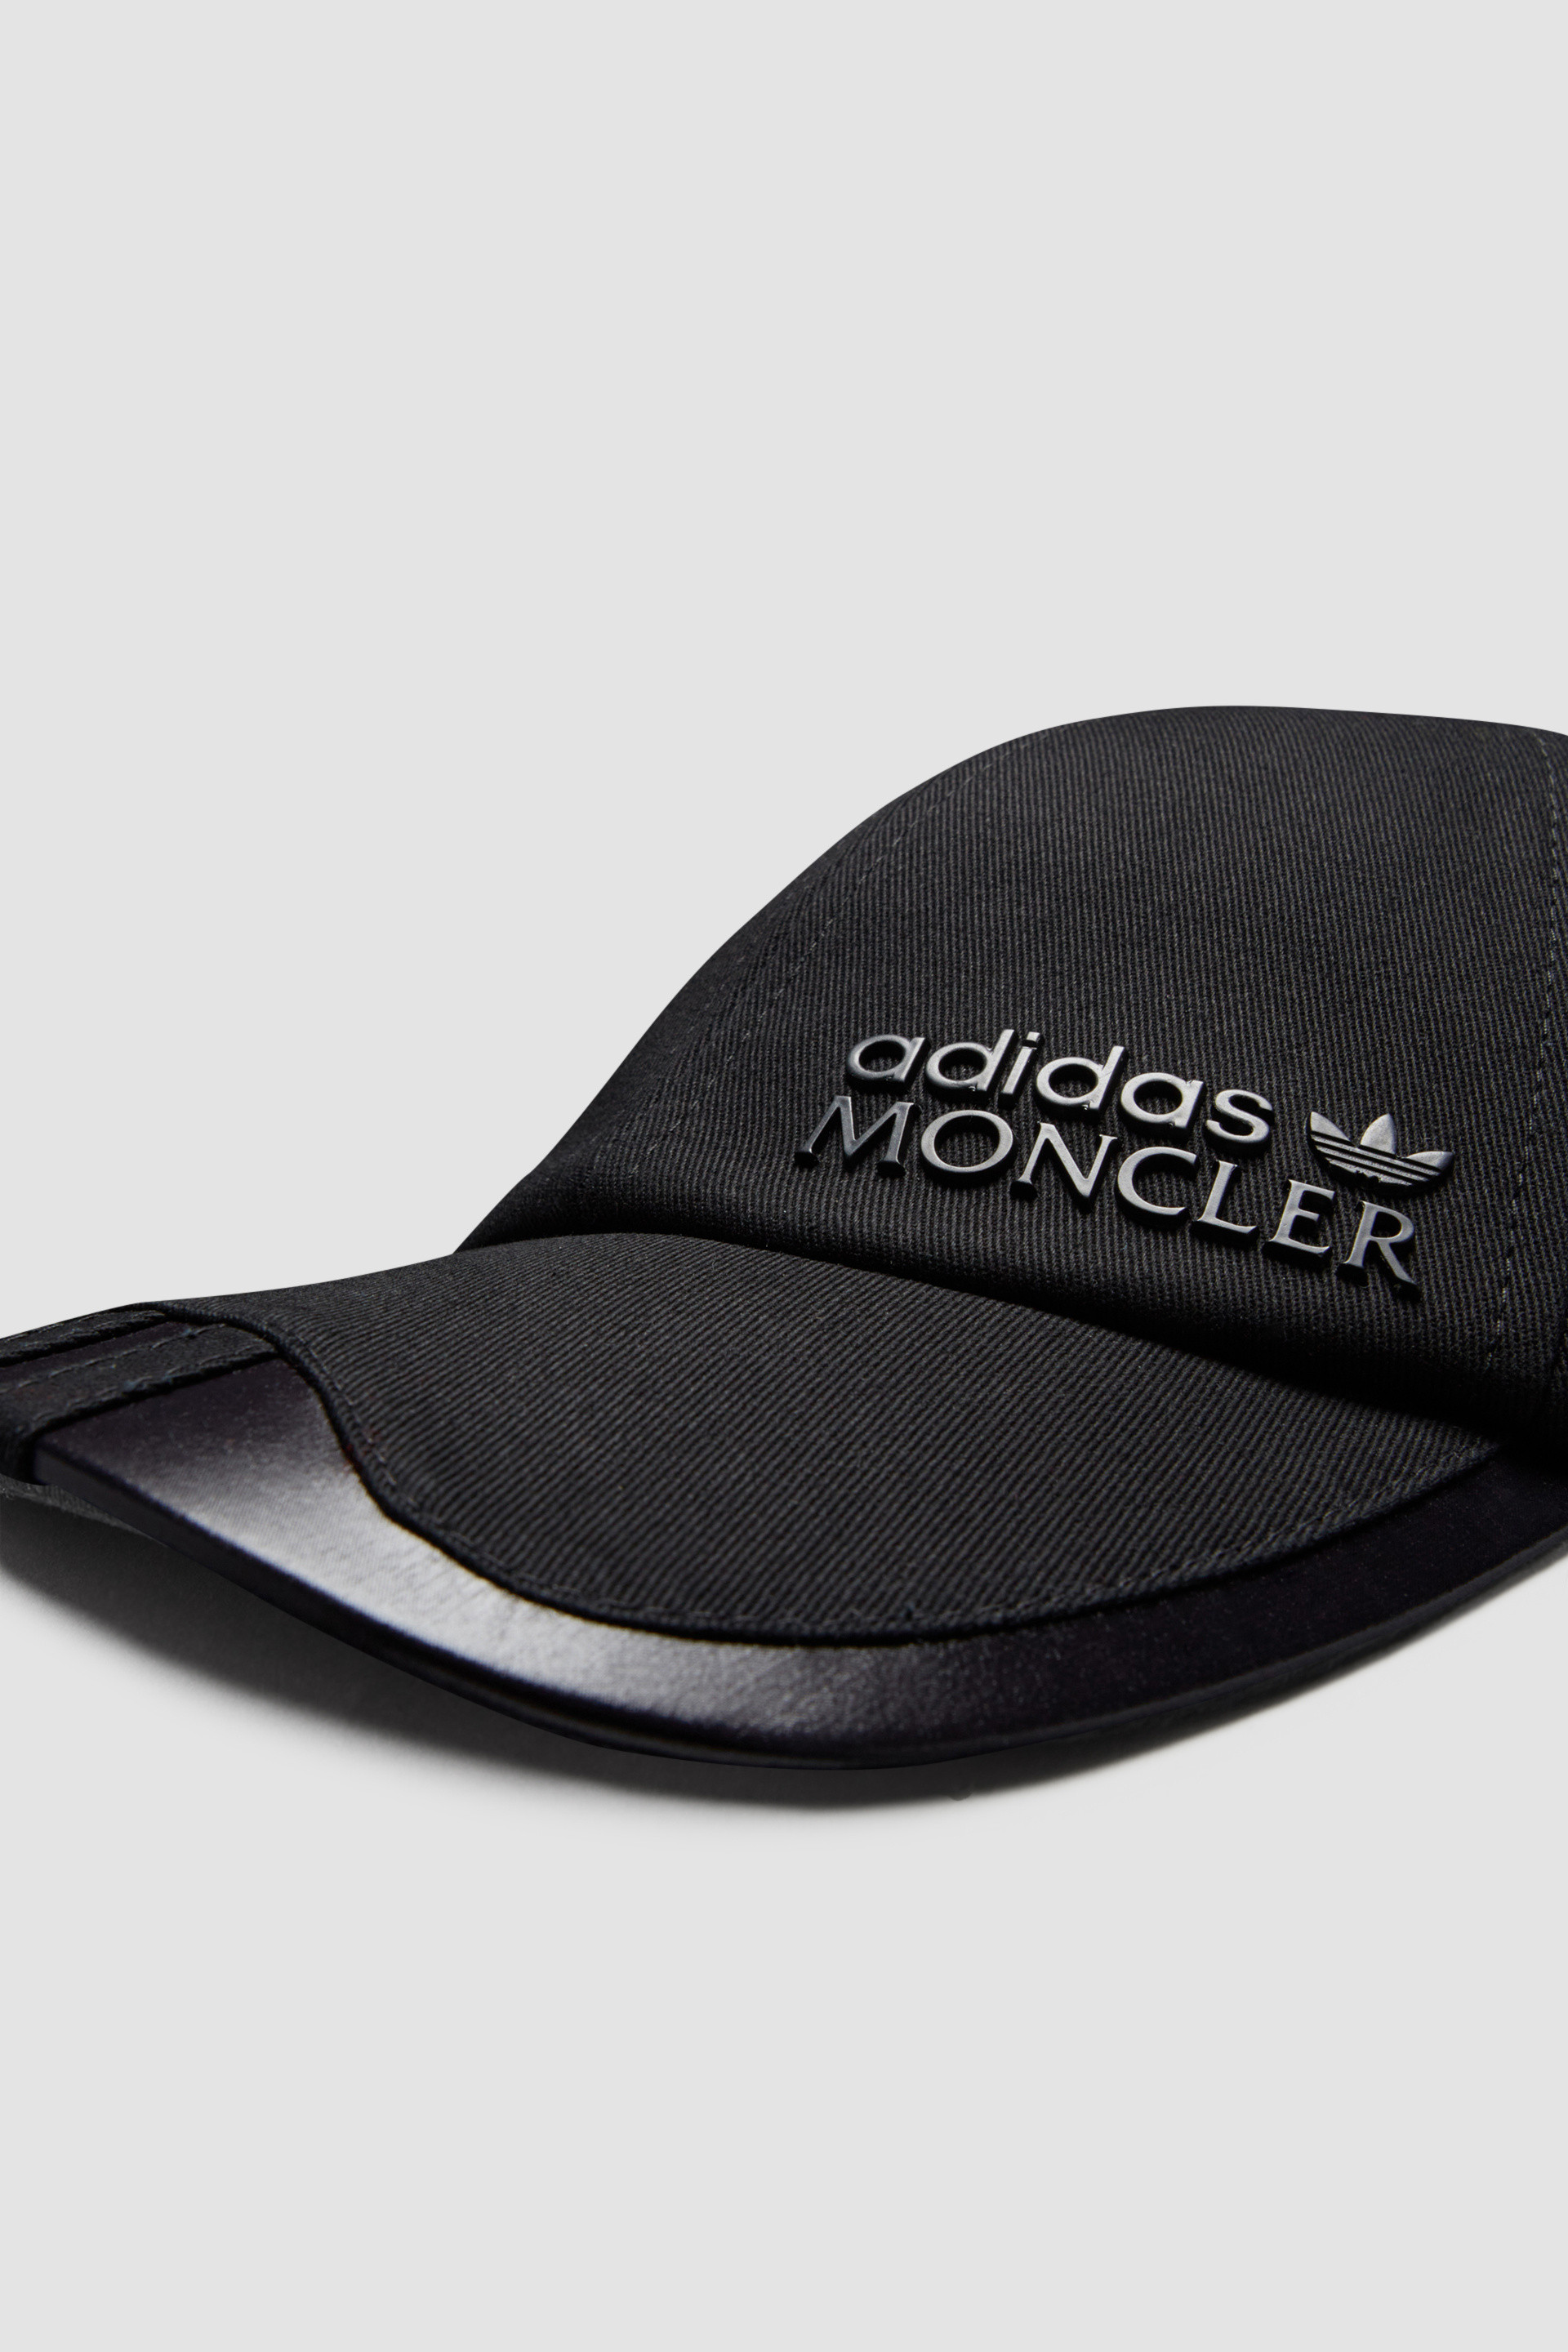 新作Moncler x Adidas Baseball Cap 新品未使用 帽子